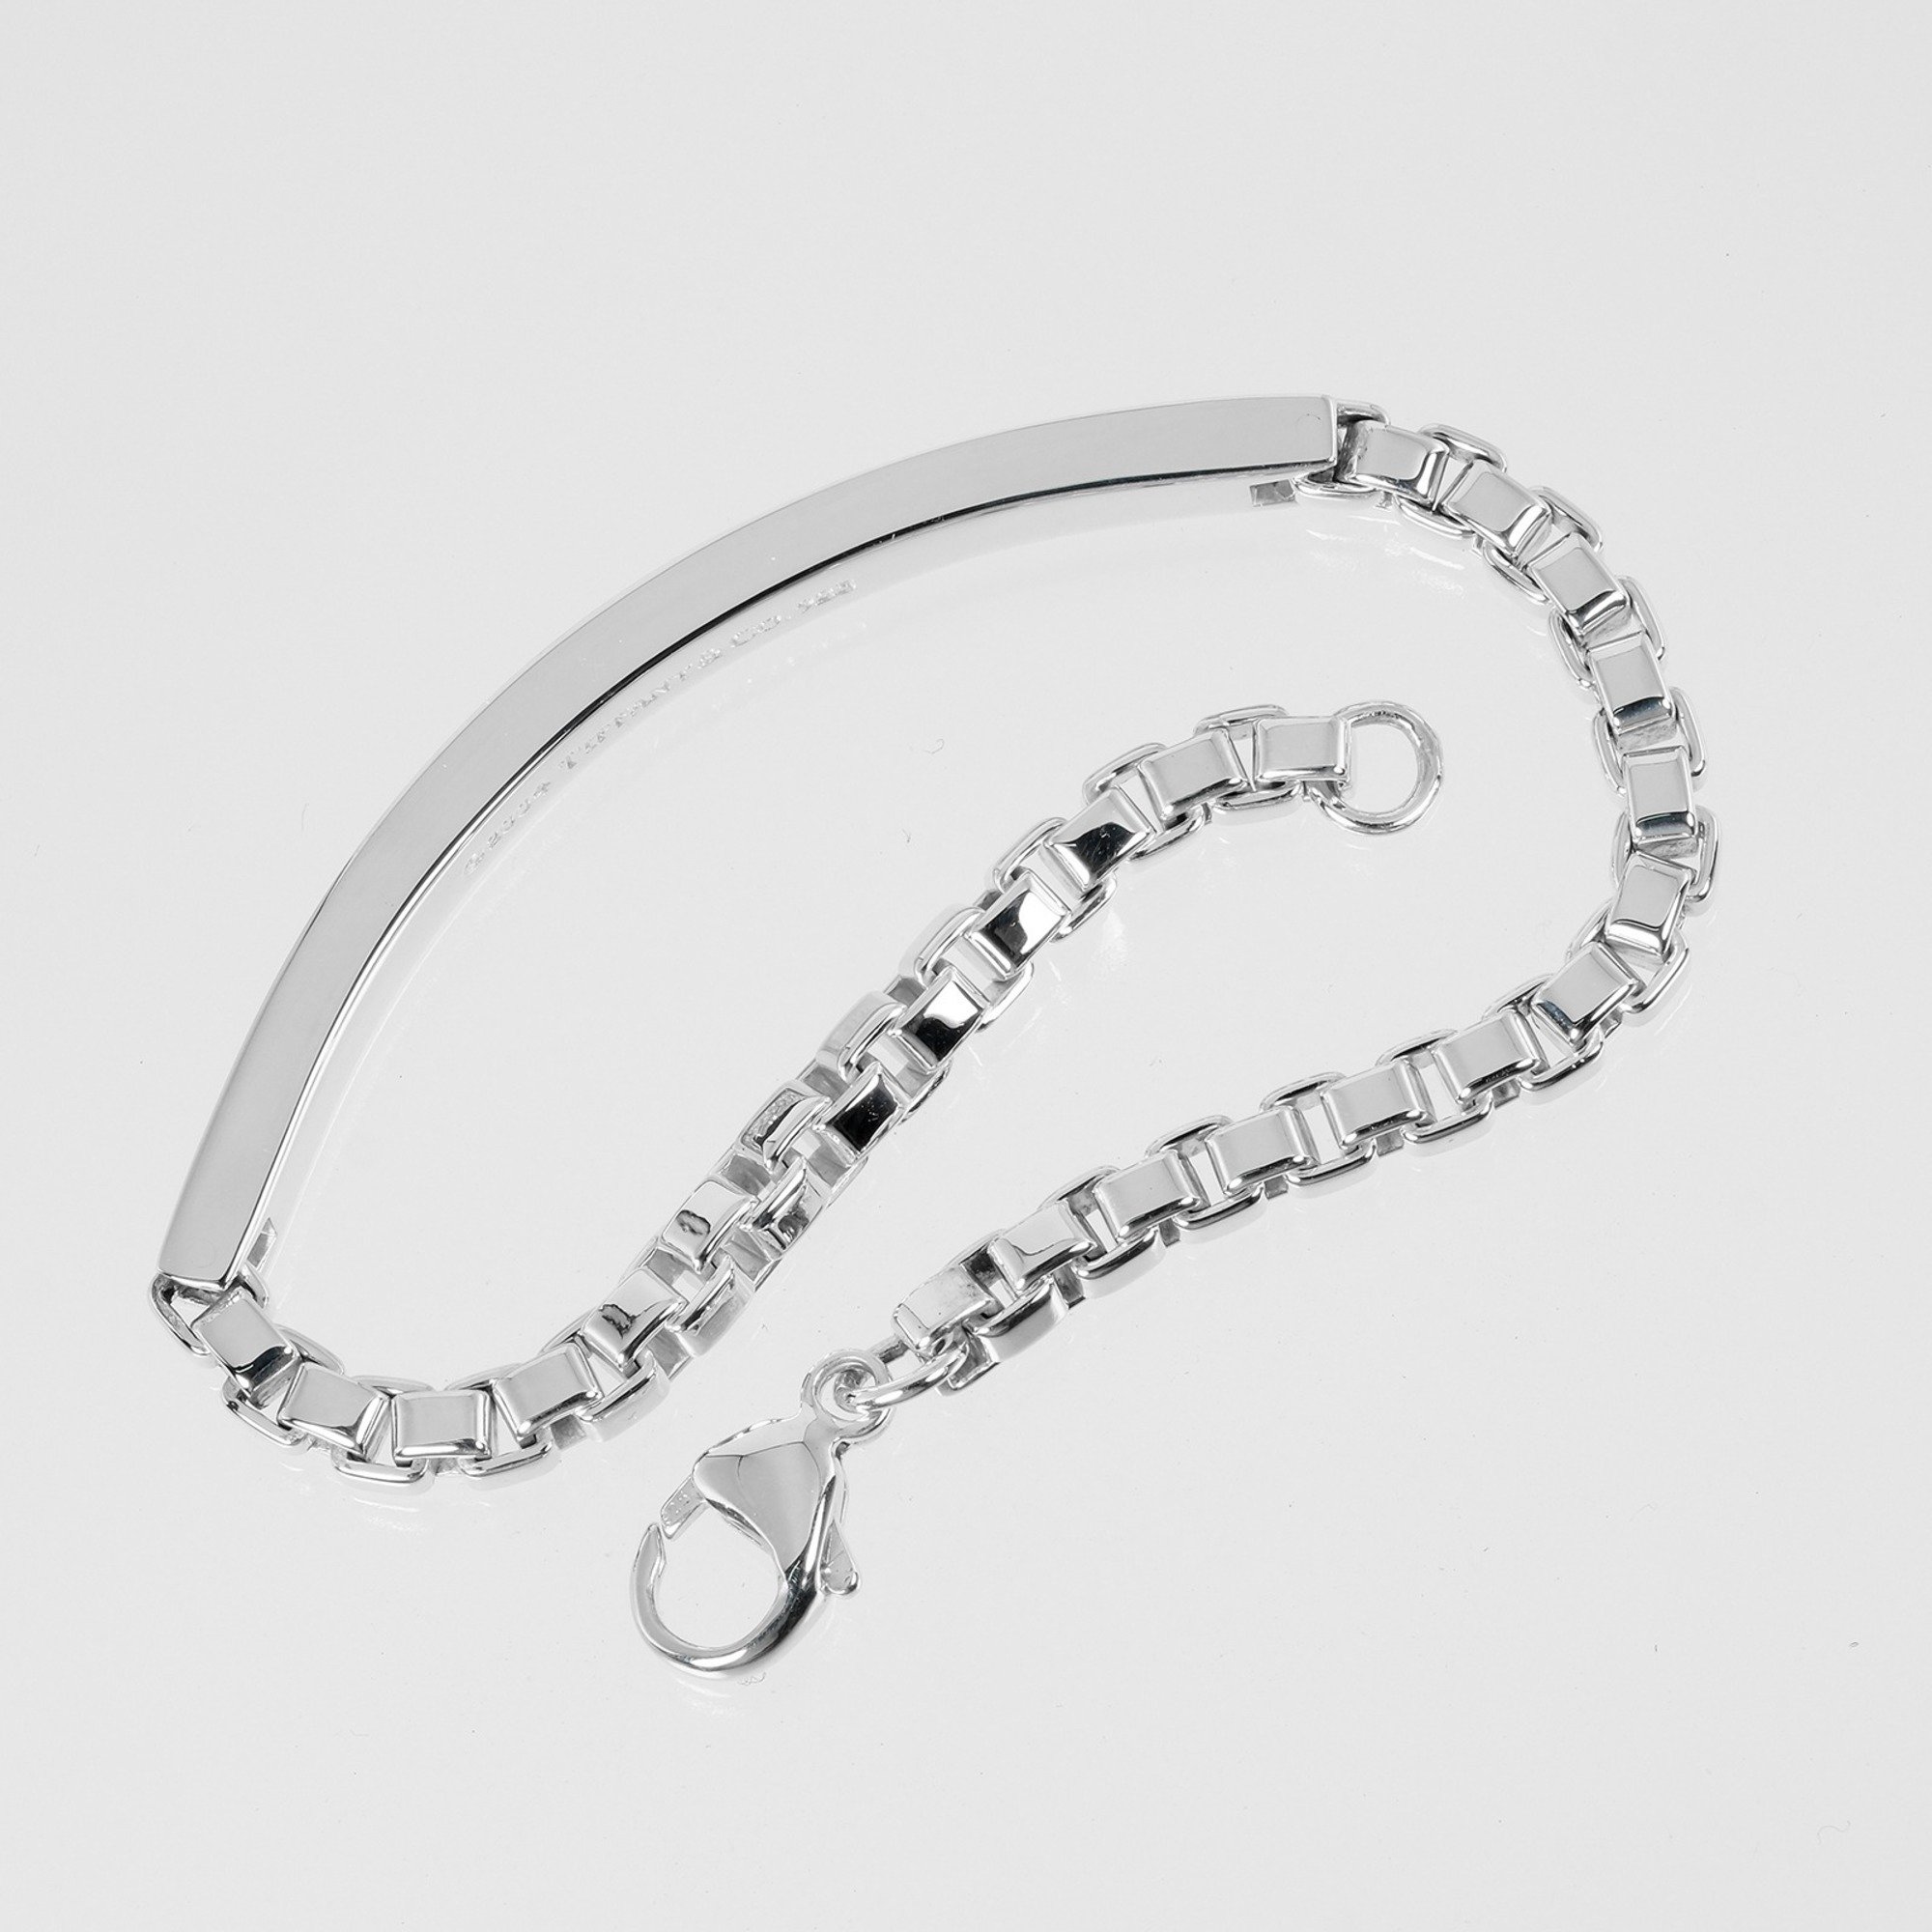 Tiffany & Co. Venetian ID bracelet, wrist size 16.5cm, 925 silver, approx. 19.31g